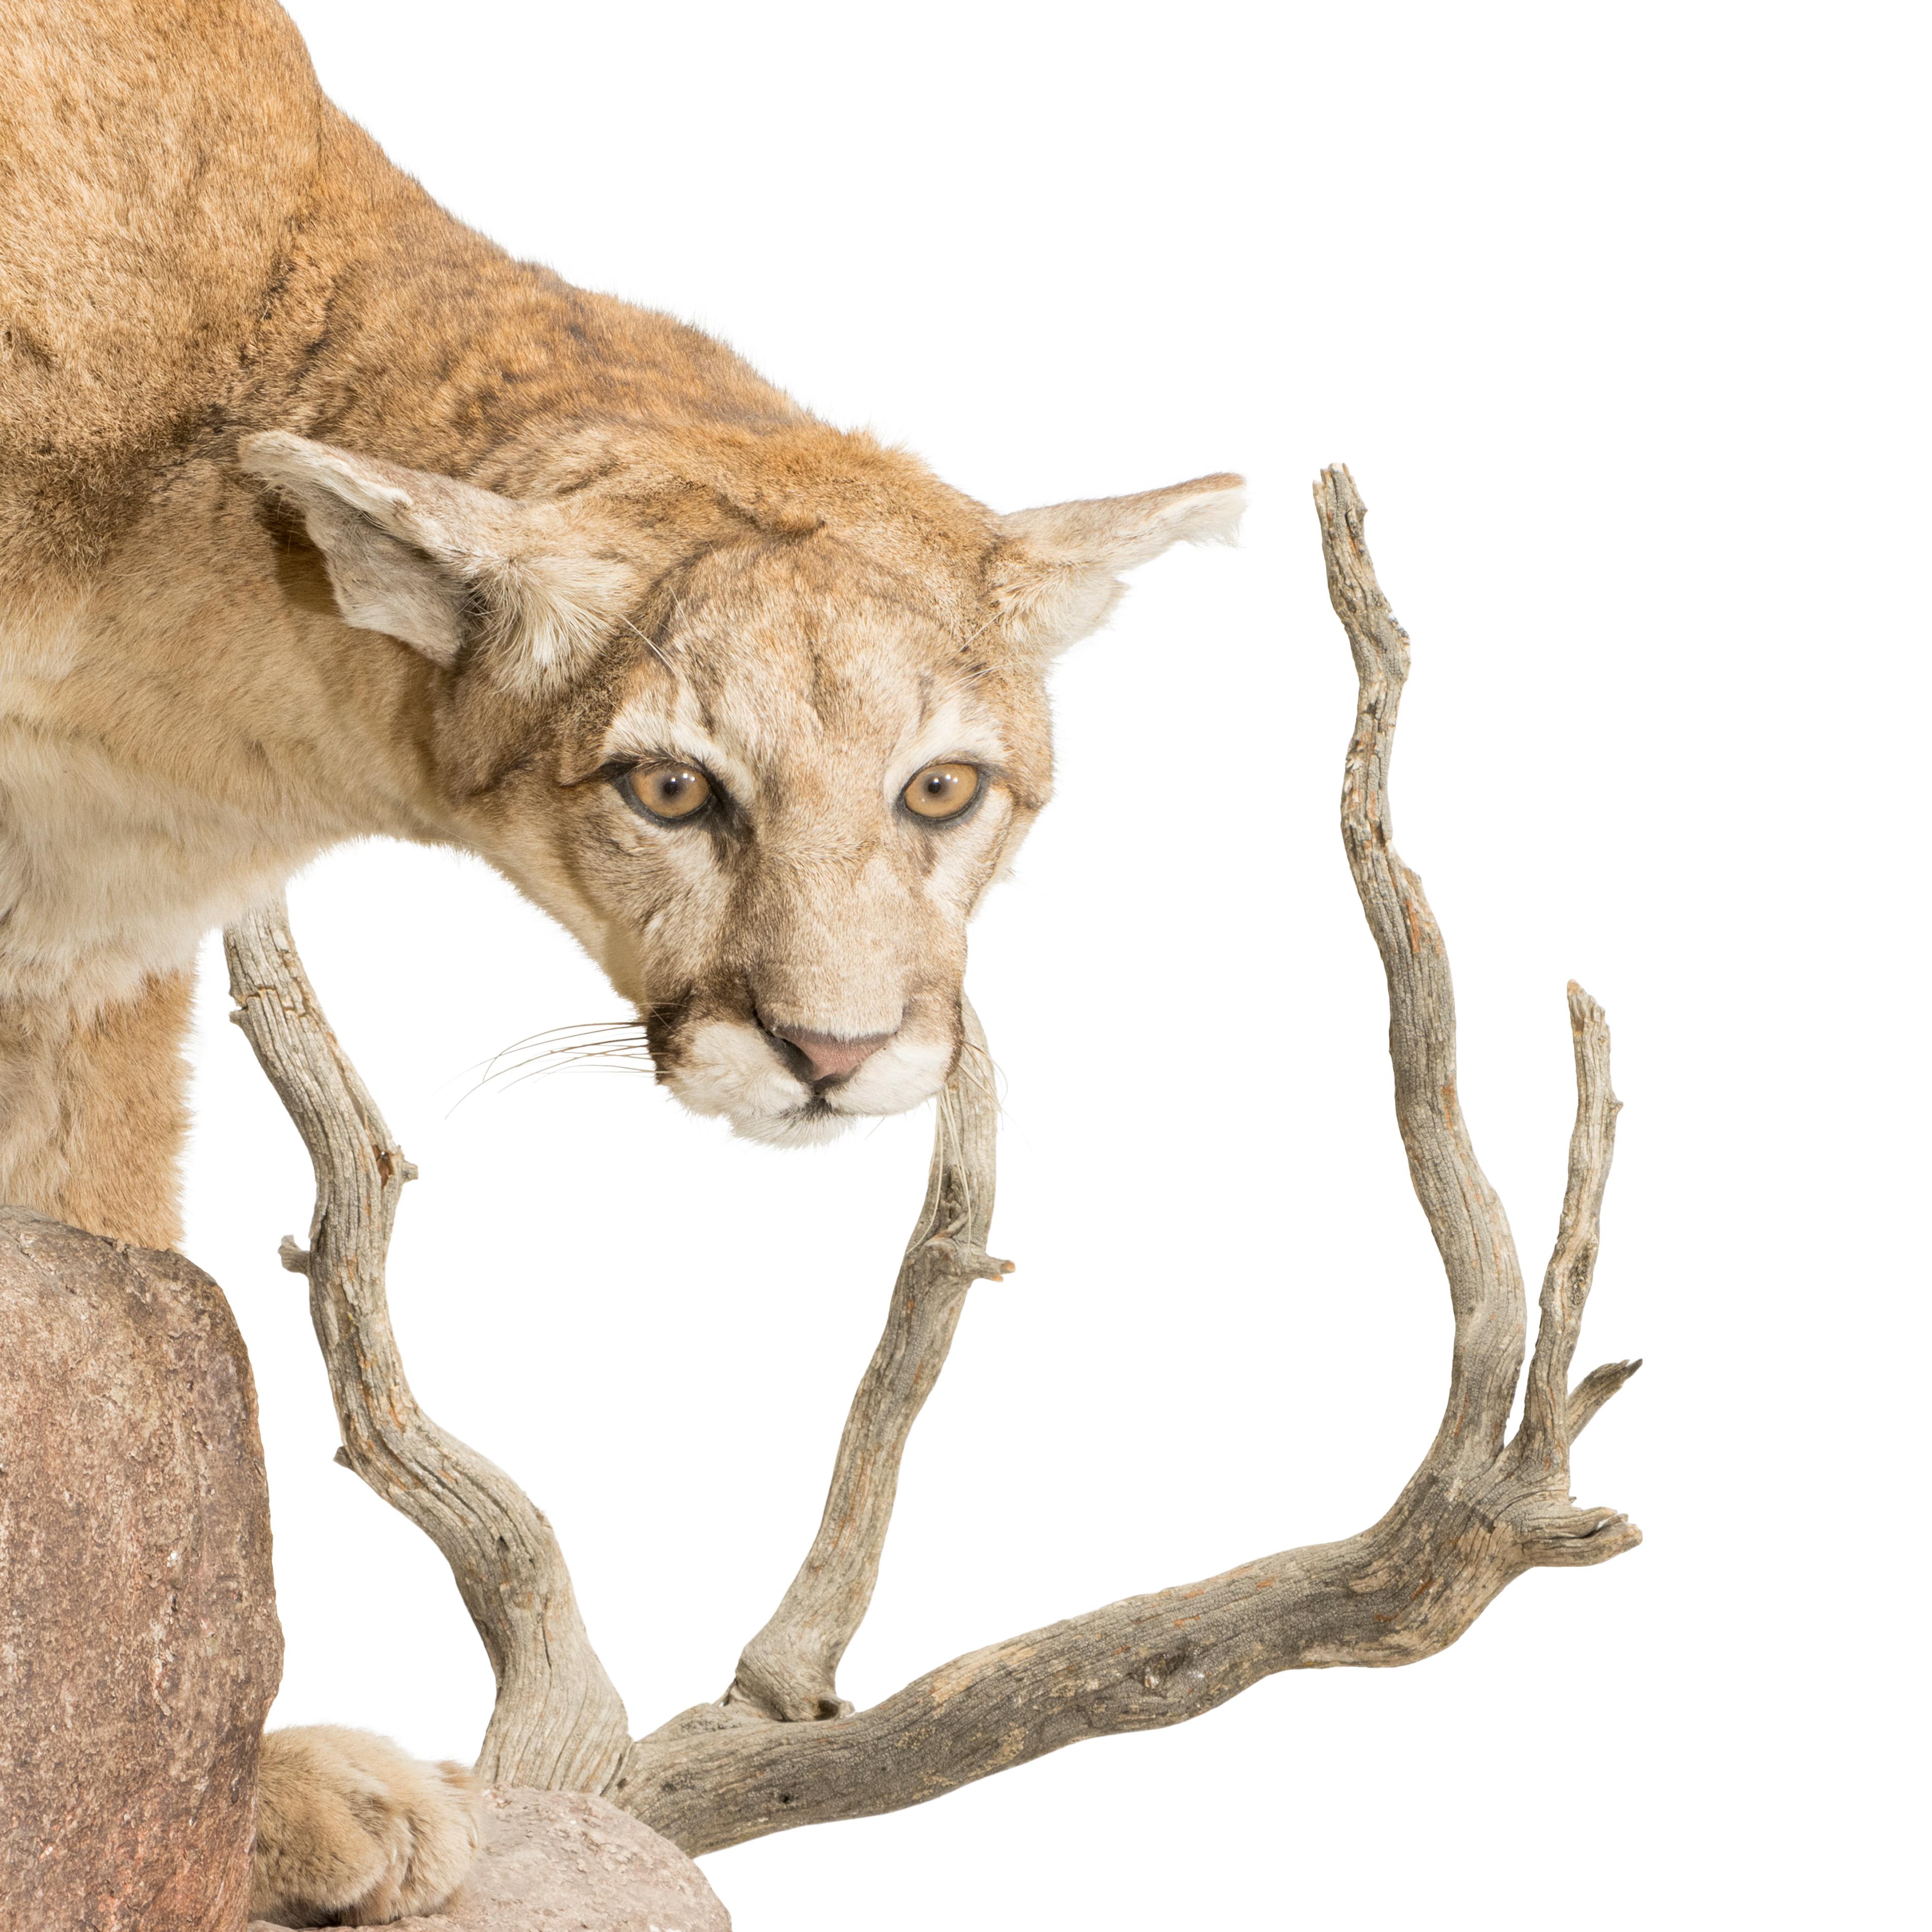 North Idaho Puma Halterung auf faux Stein Wandhalterung Basis.

PERIOD: Zeitgenössisch
URSPRUNG: Colorado, Vereinigte Staaten
GRÖSSE: 39 